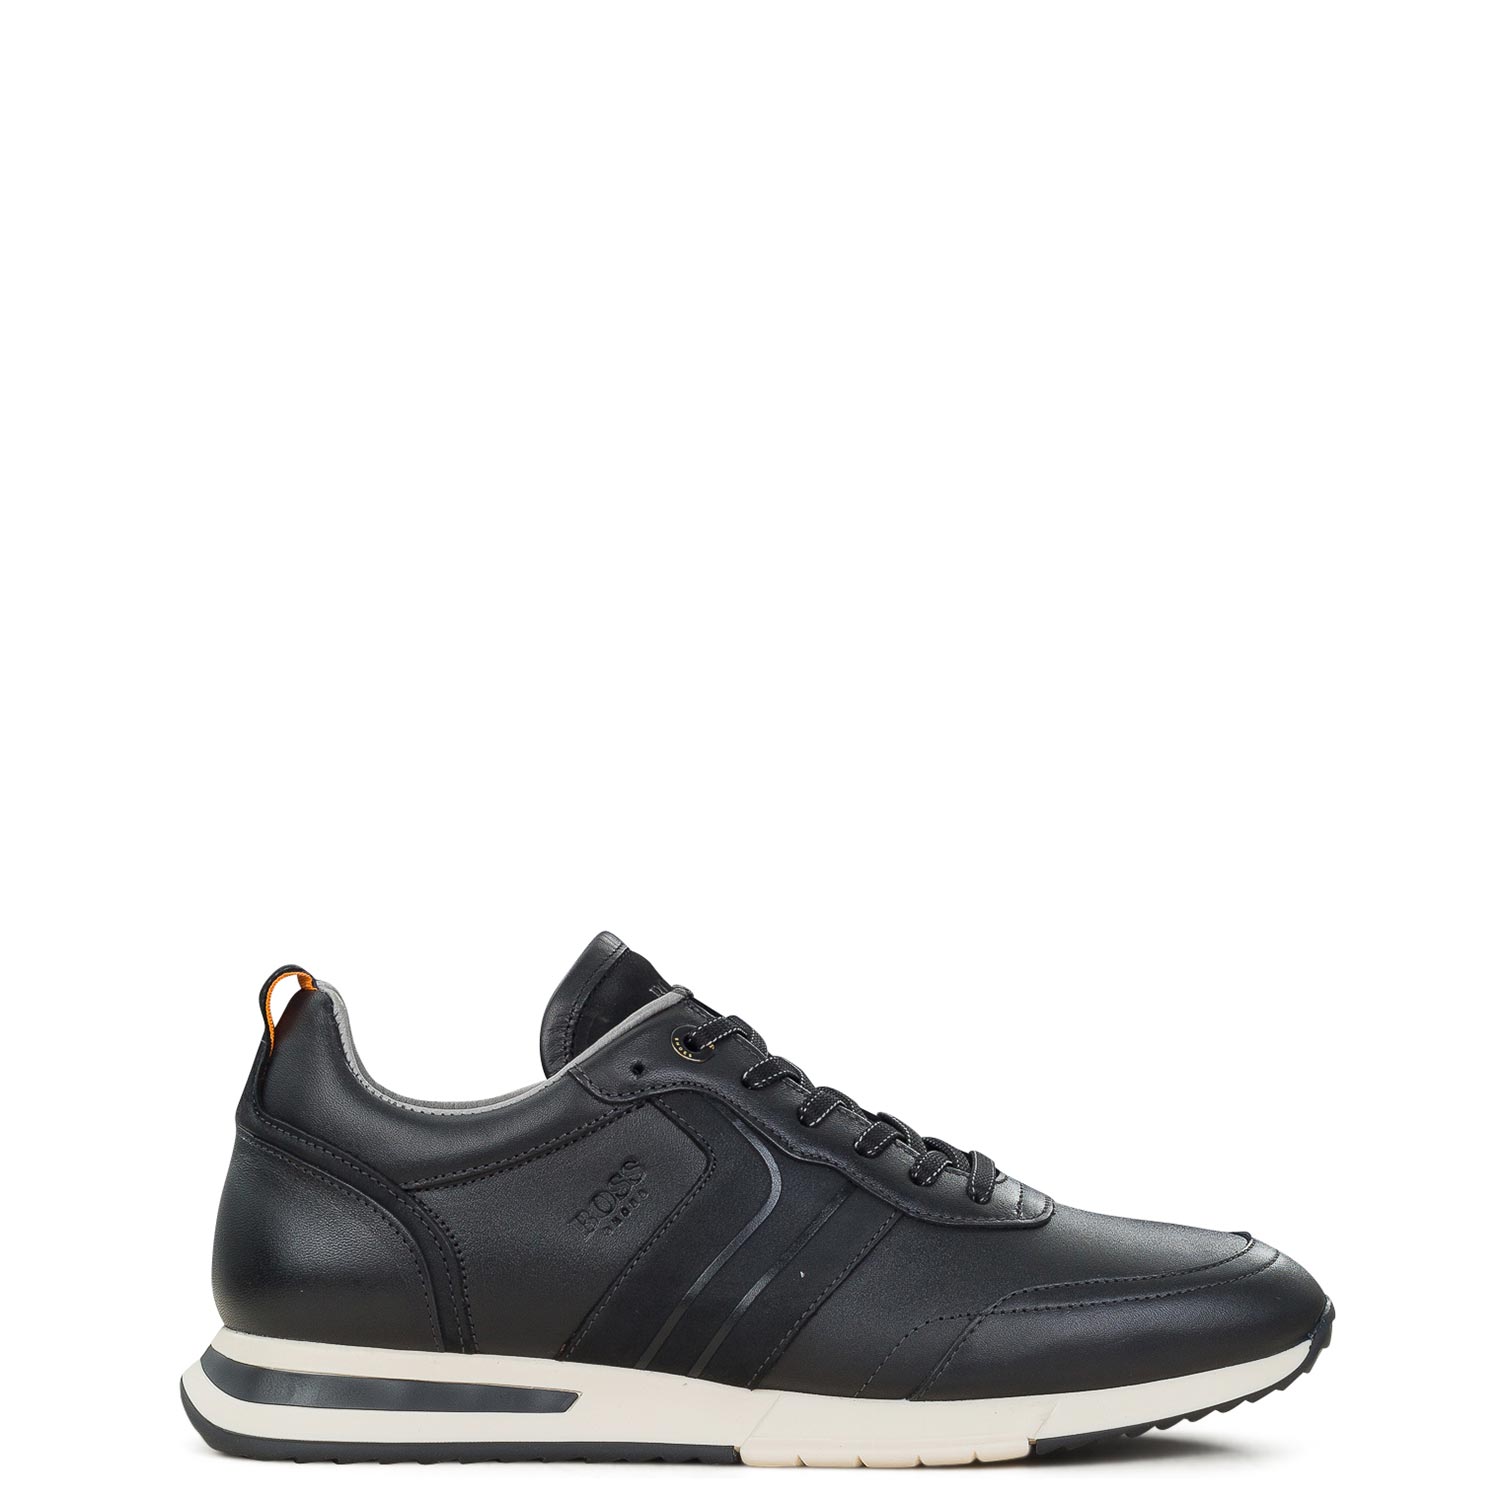 Υποδήματα - Sneakers Sneakers ανδρικά Boss Shoes Μαύρο RS153